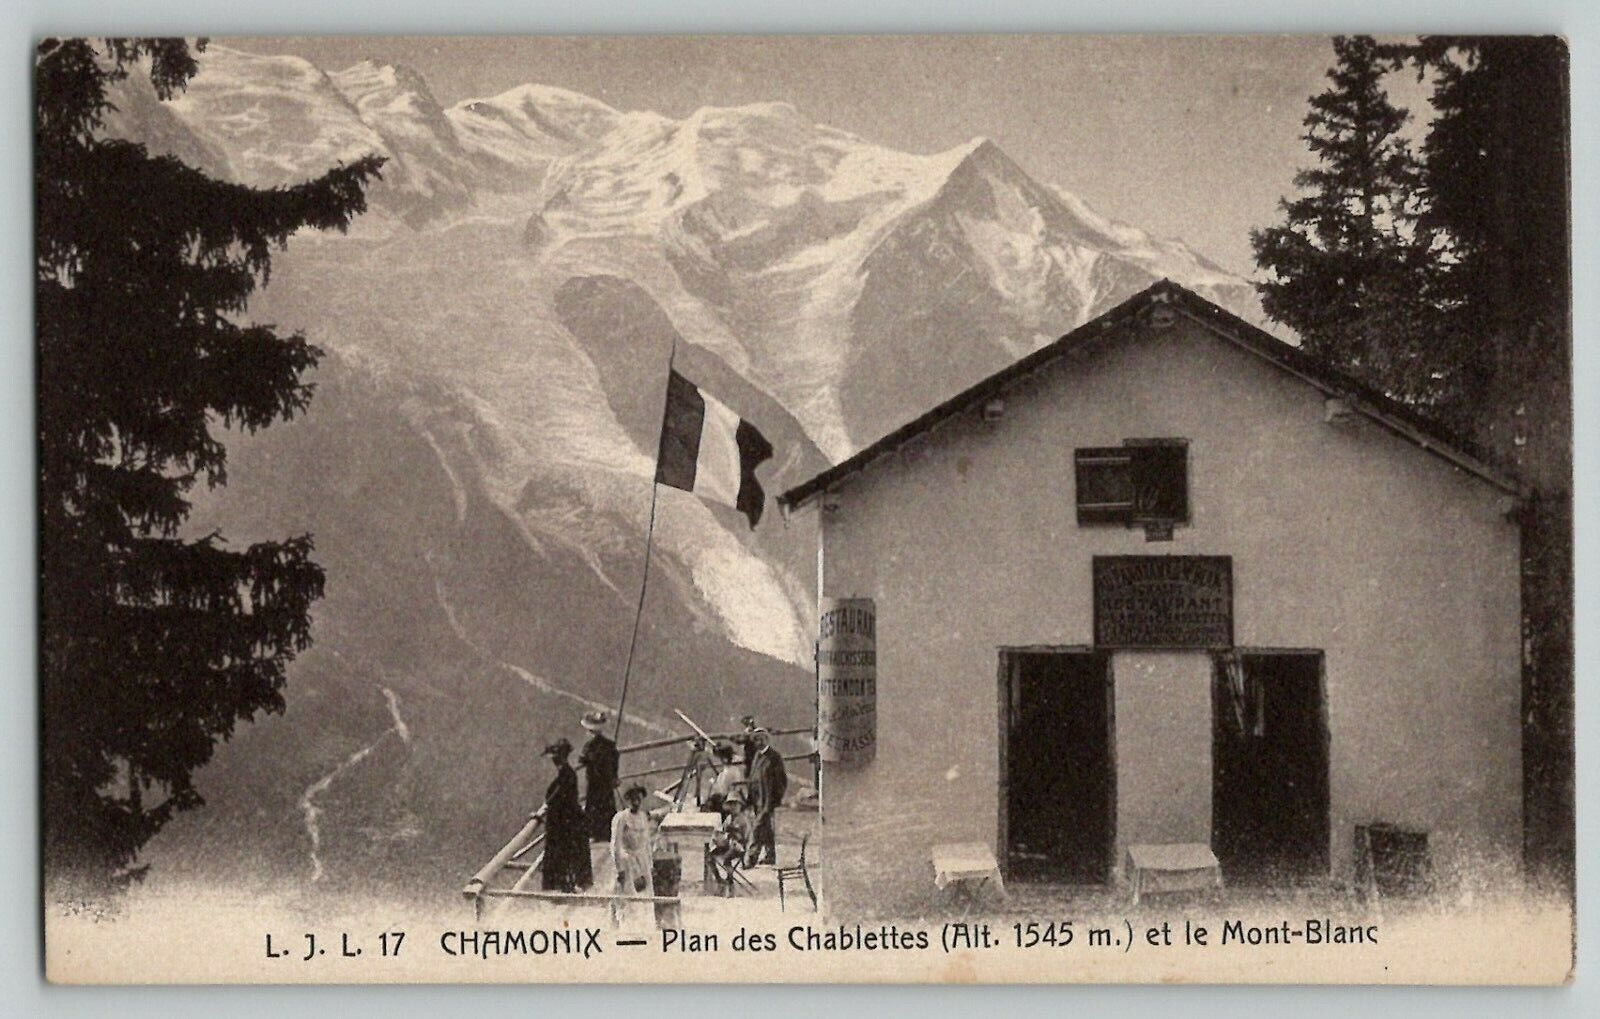 c1910s Chamonix plan des Chablettes et le Mont-Blanc France Postcard L J L 17